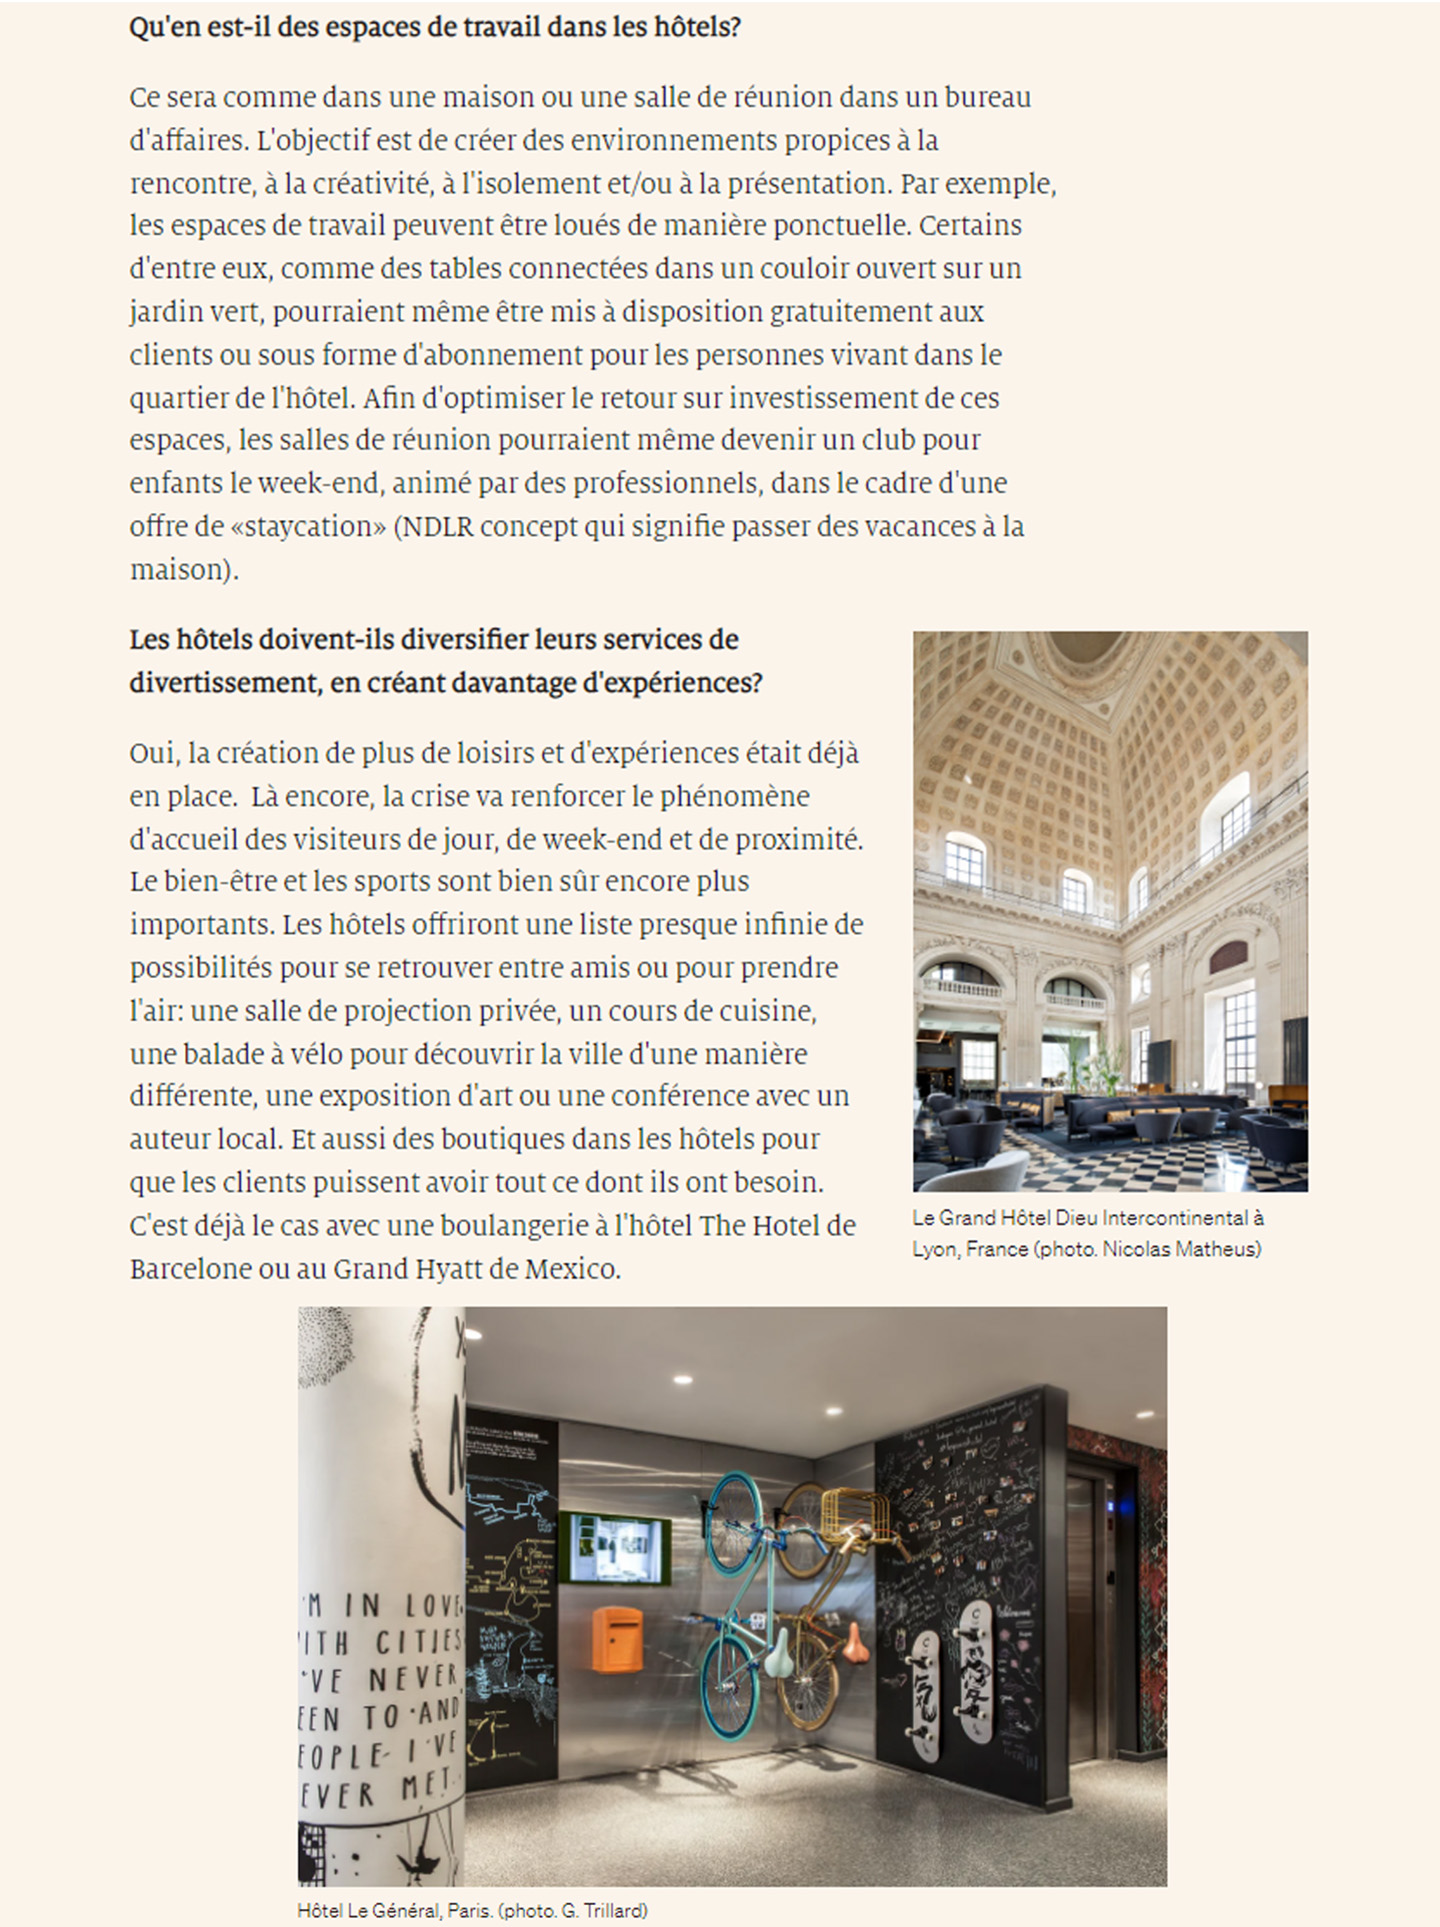 Article dans Luxury tribune sur le studio jean-philippe nuel et le futur de l'hotellerie, de l'architecture d'intérieur dans l'hotellerie de luxe